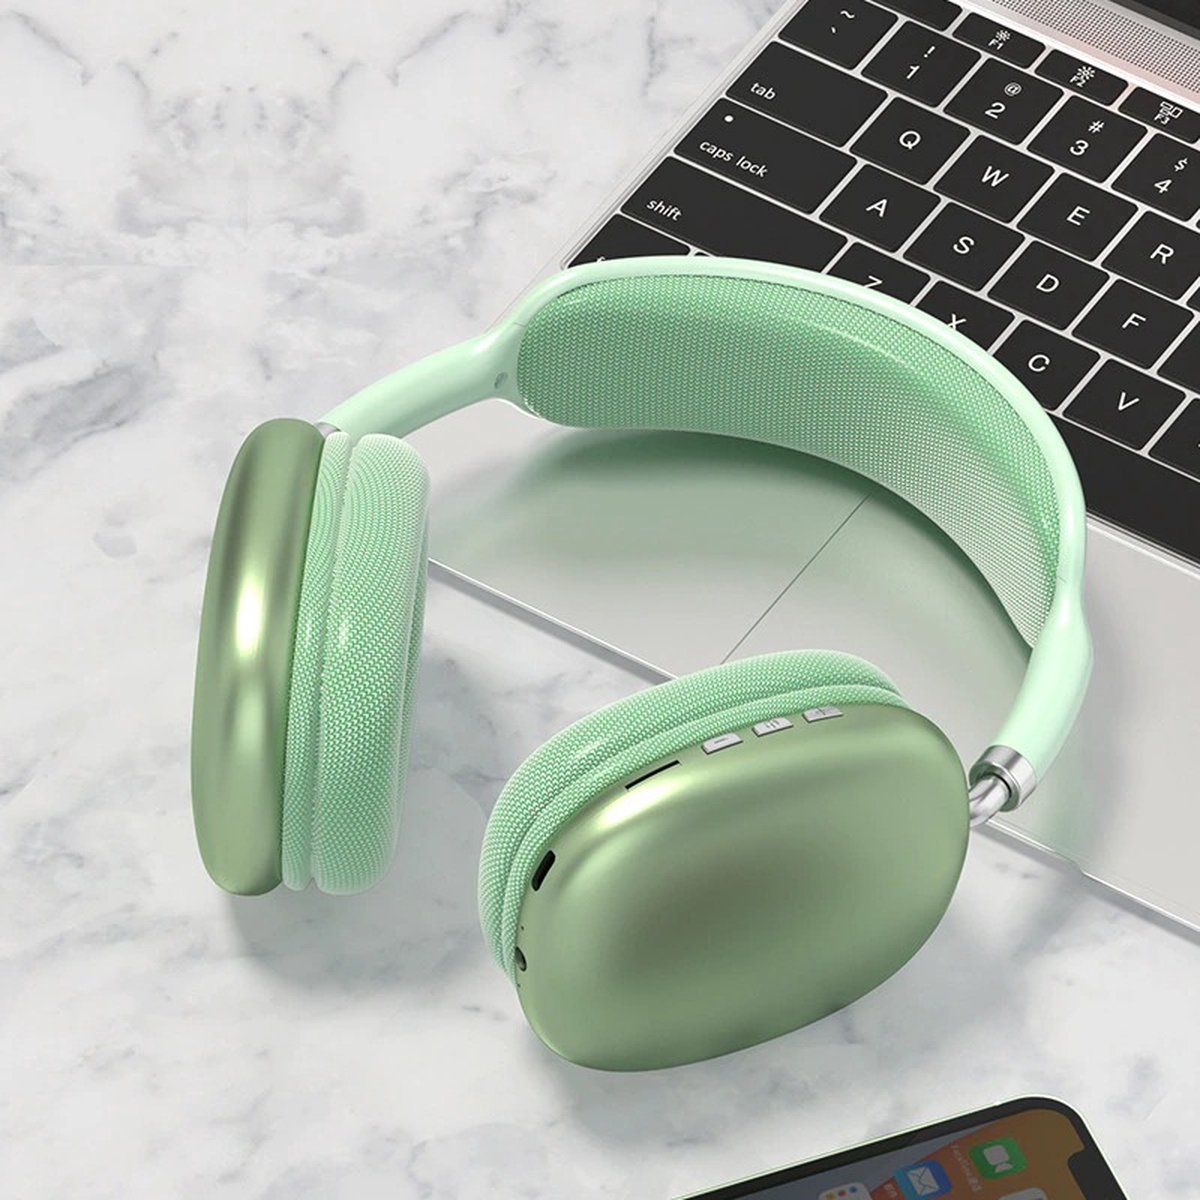 TechU™ Draadloze Bluetooth Koptelefoon – Game Headset – Hoofdtelefoon voor Muziek, Podcast & Gamen – Groen